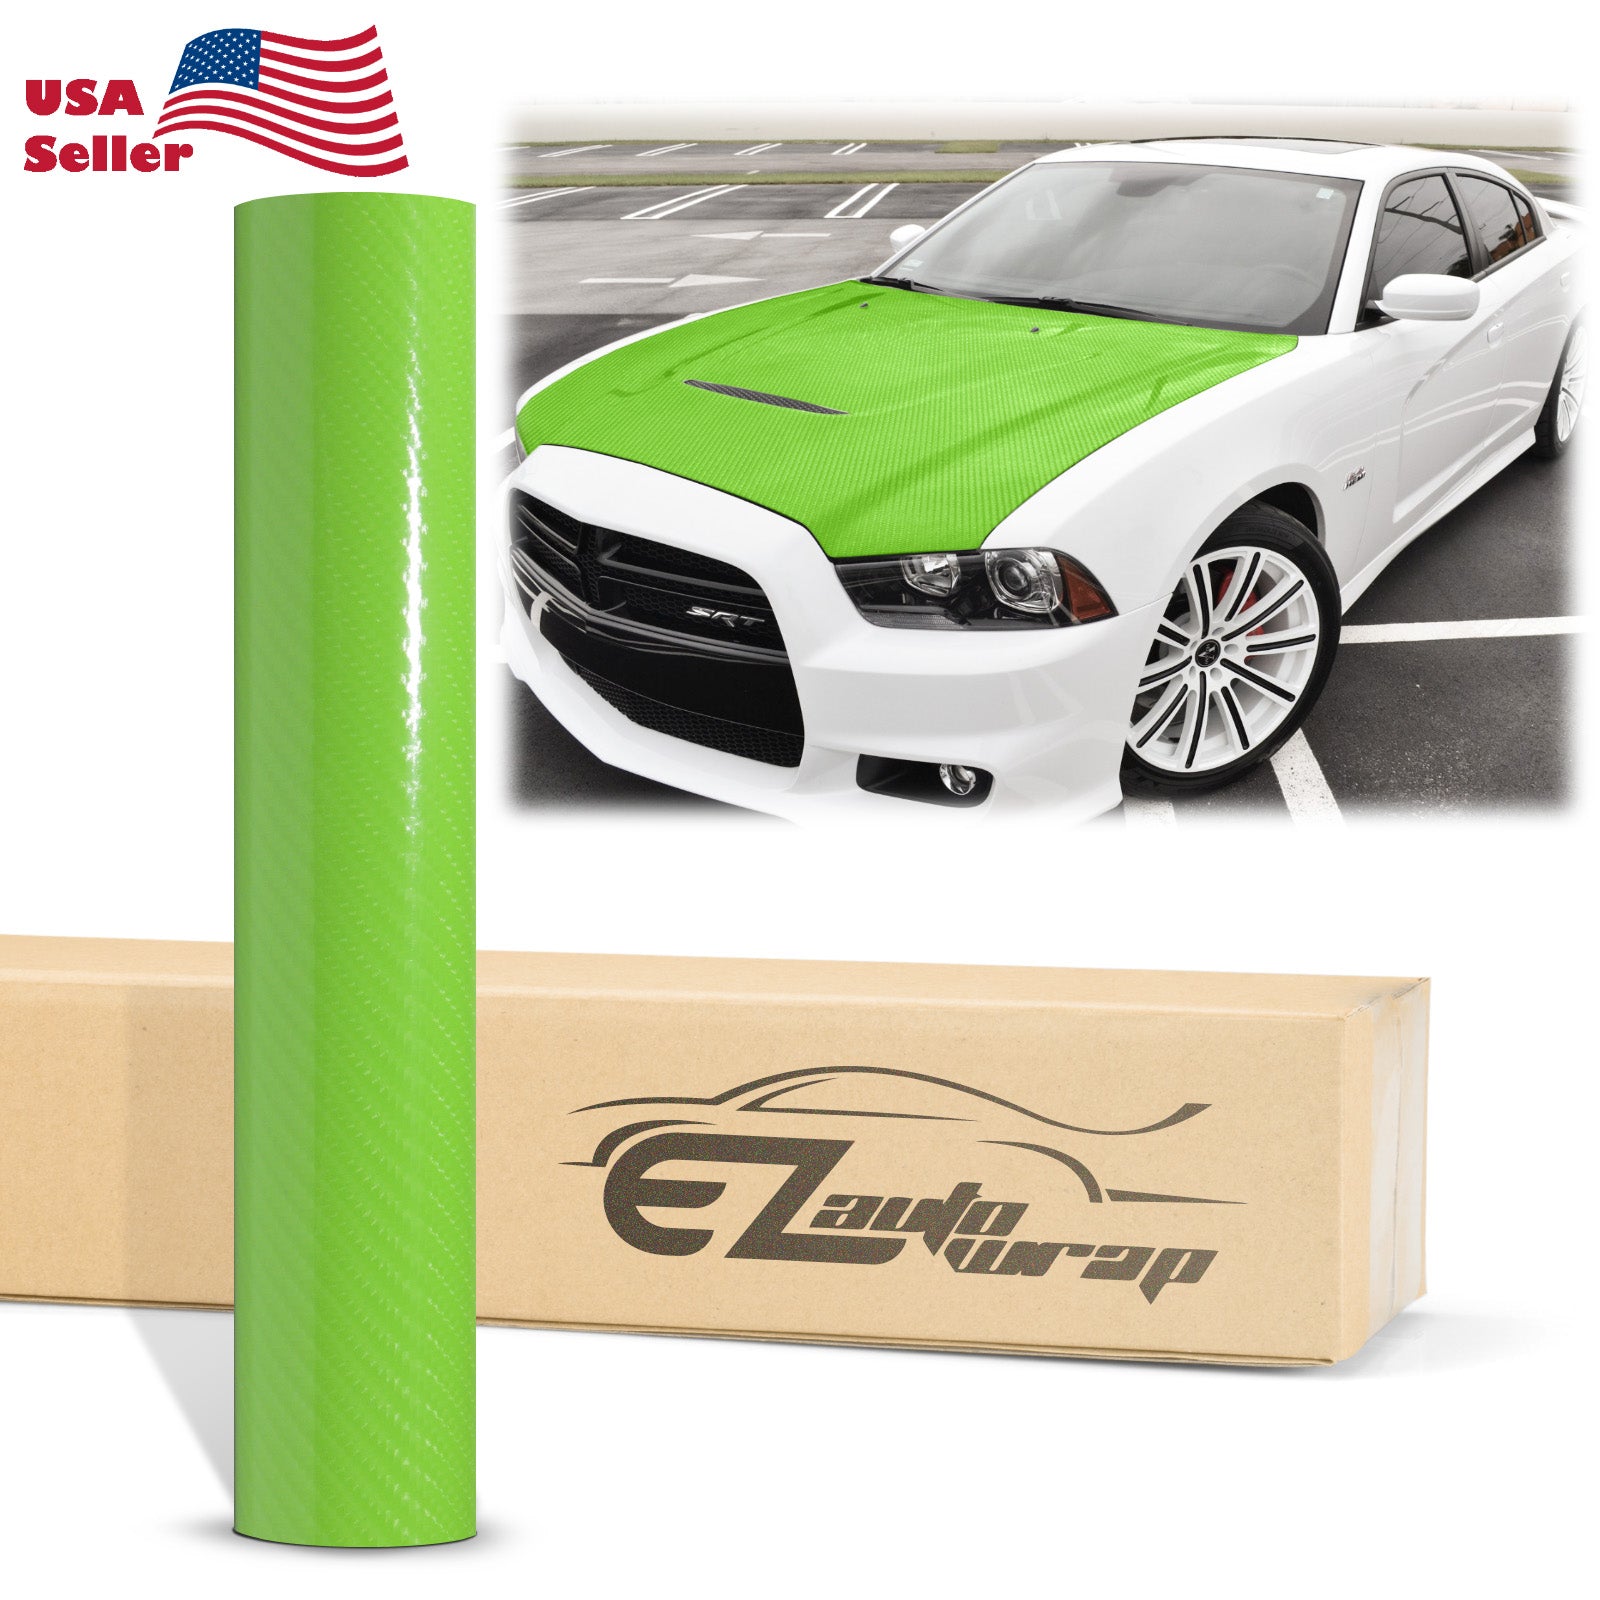 7D Carbon Fiber Green High Gloss Vinyl Wrap